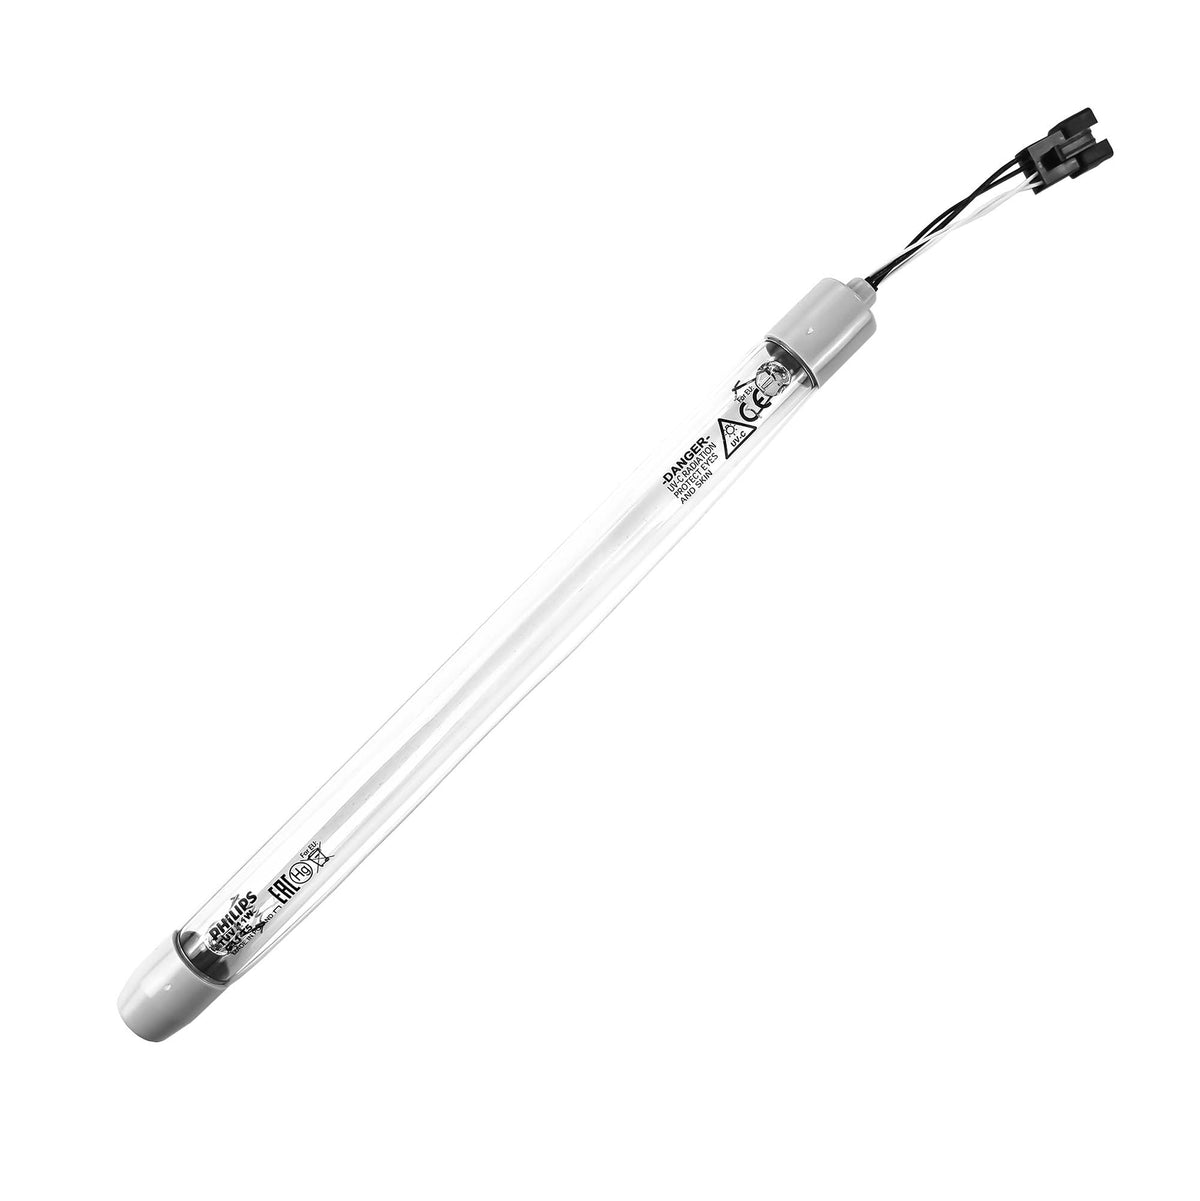 Ersatz-Gehäuse für UV Lampe zu SPRUDELUX® Diamond 2.0, 3.0, Black&White und FLAME